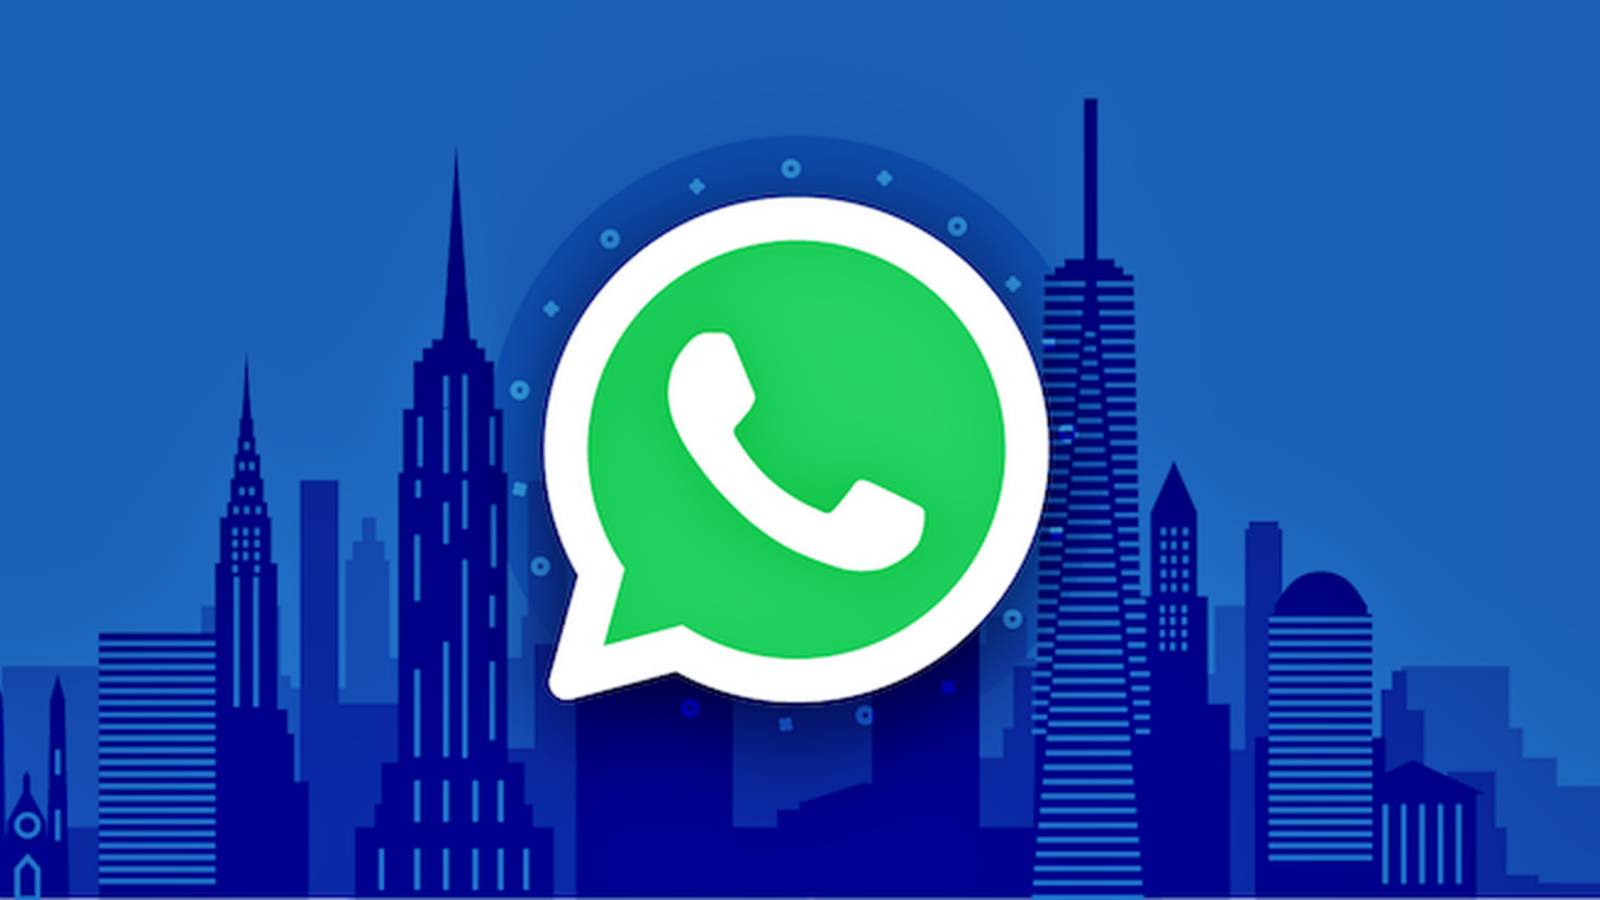 WhatsApp-Synchronisierung